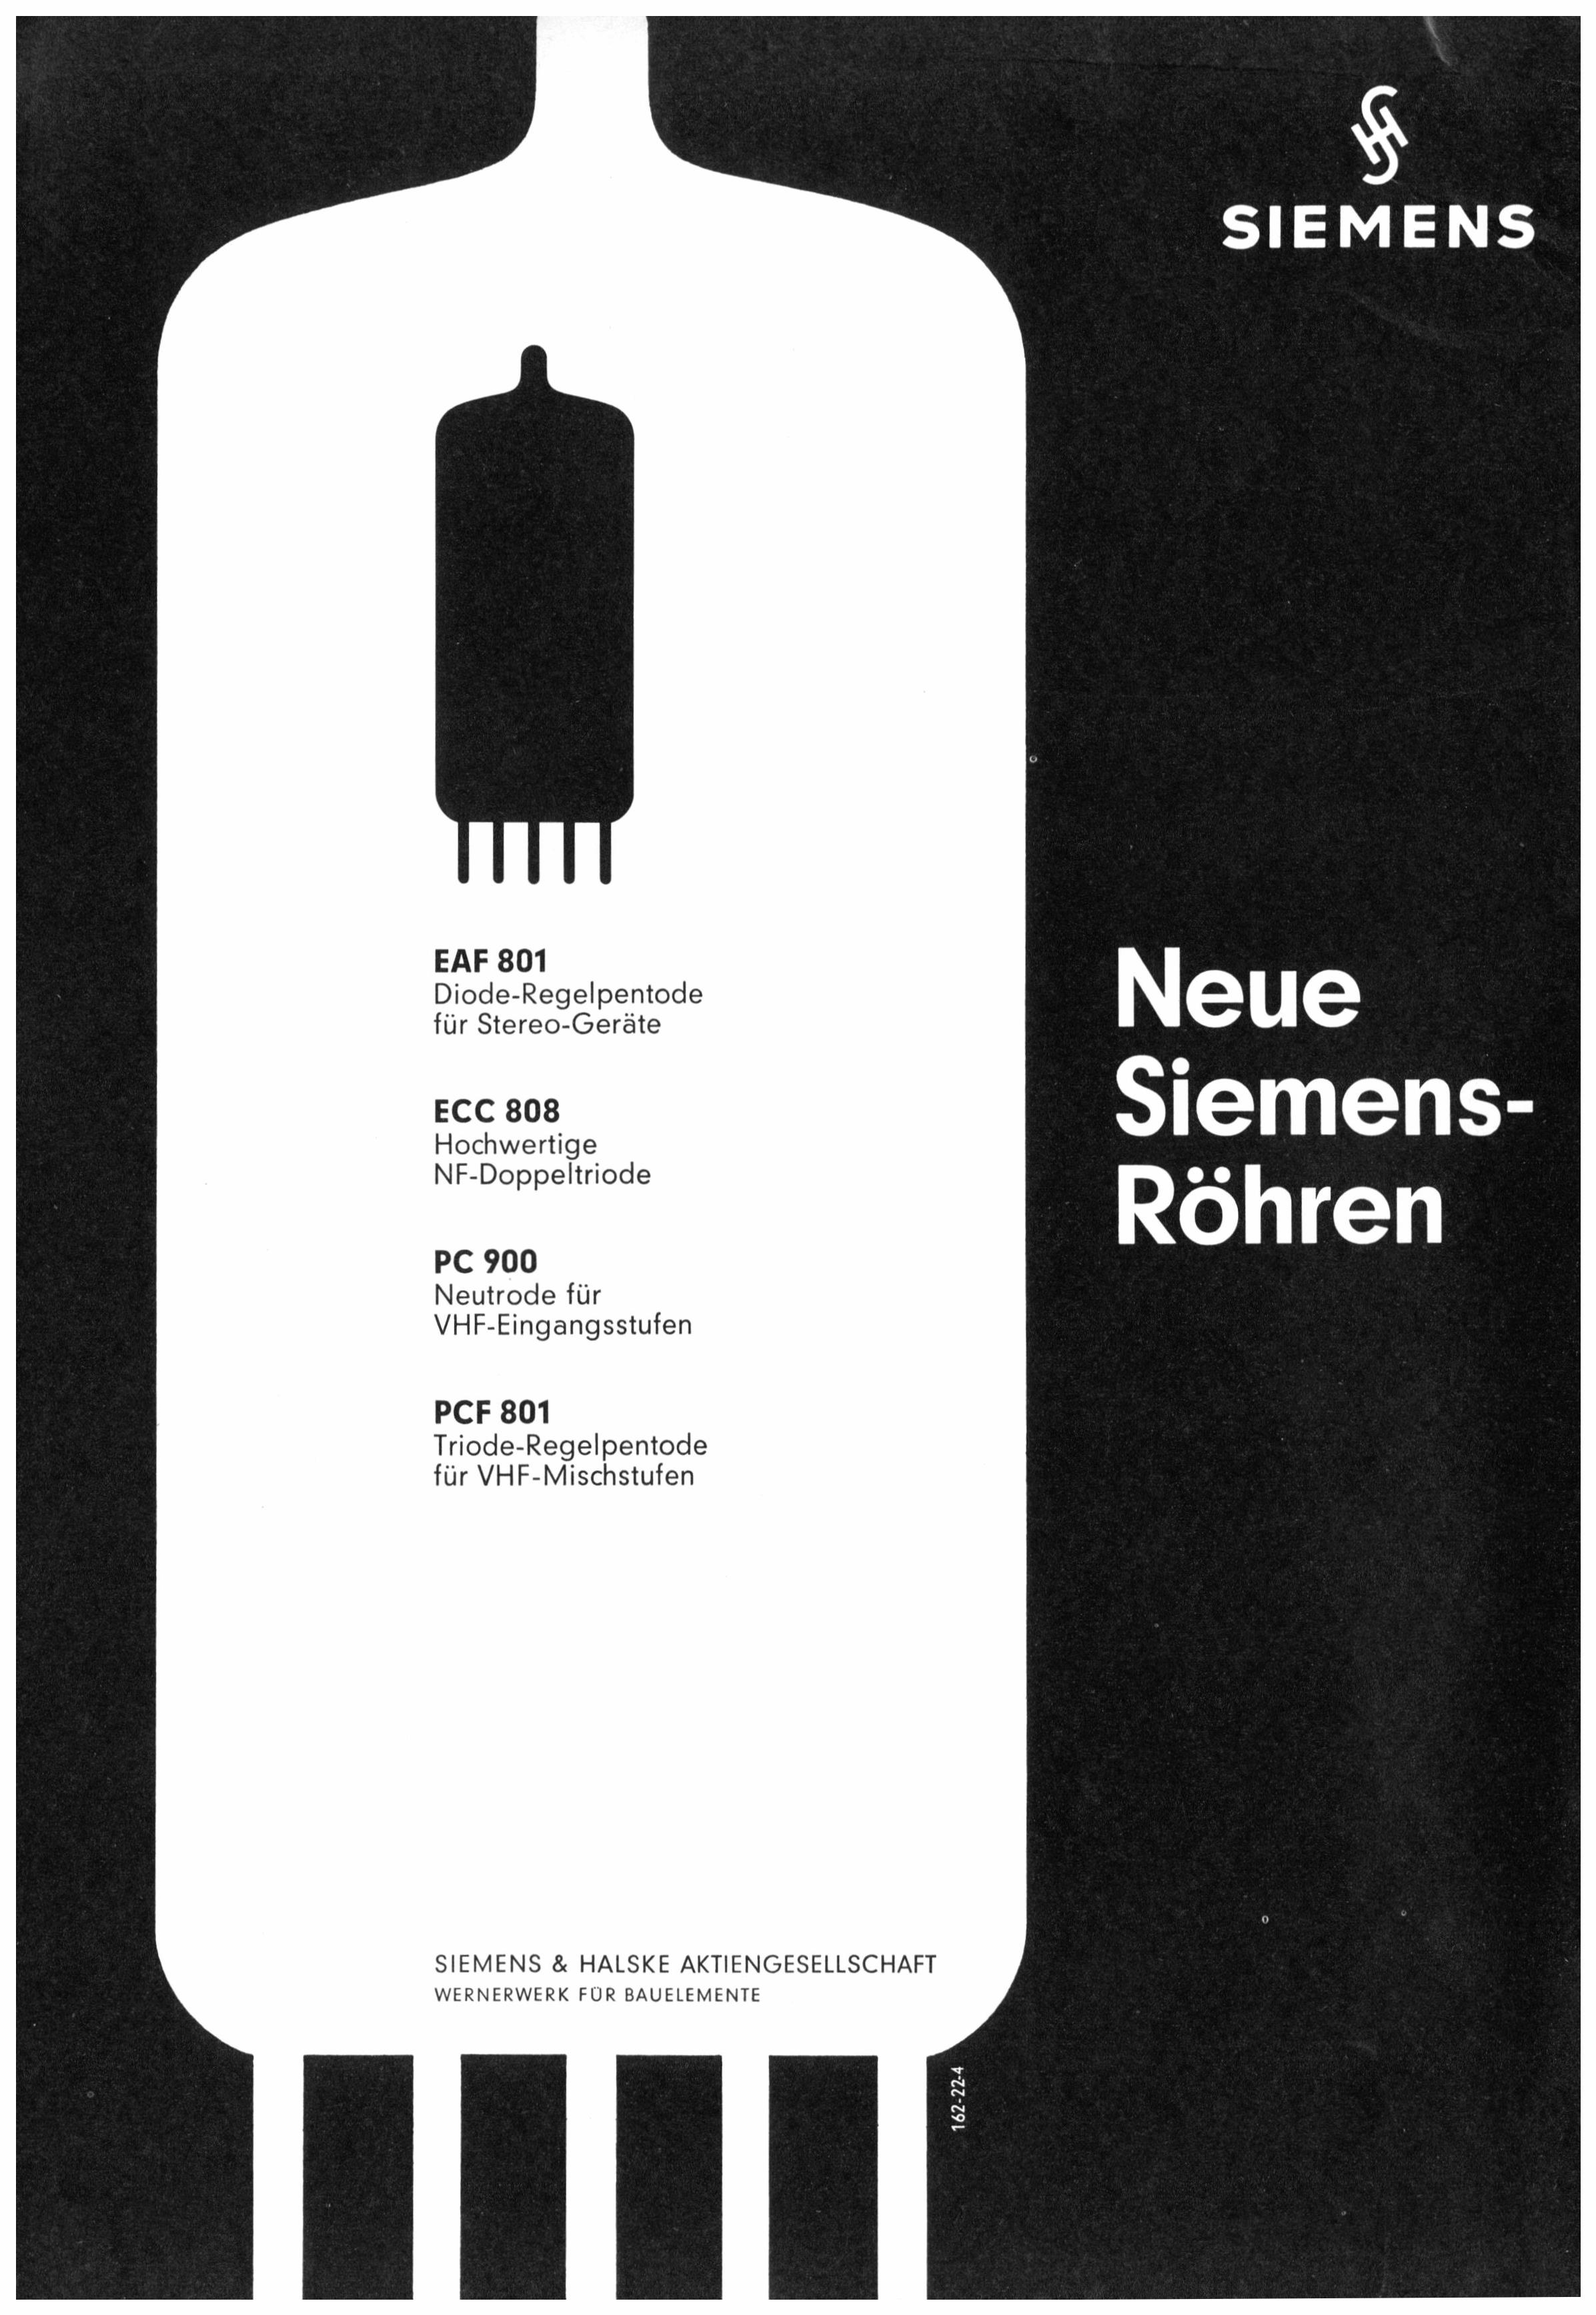 Siemens 1963 3.jpg